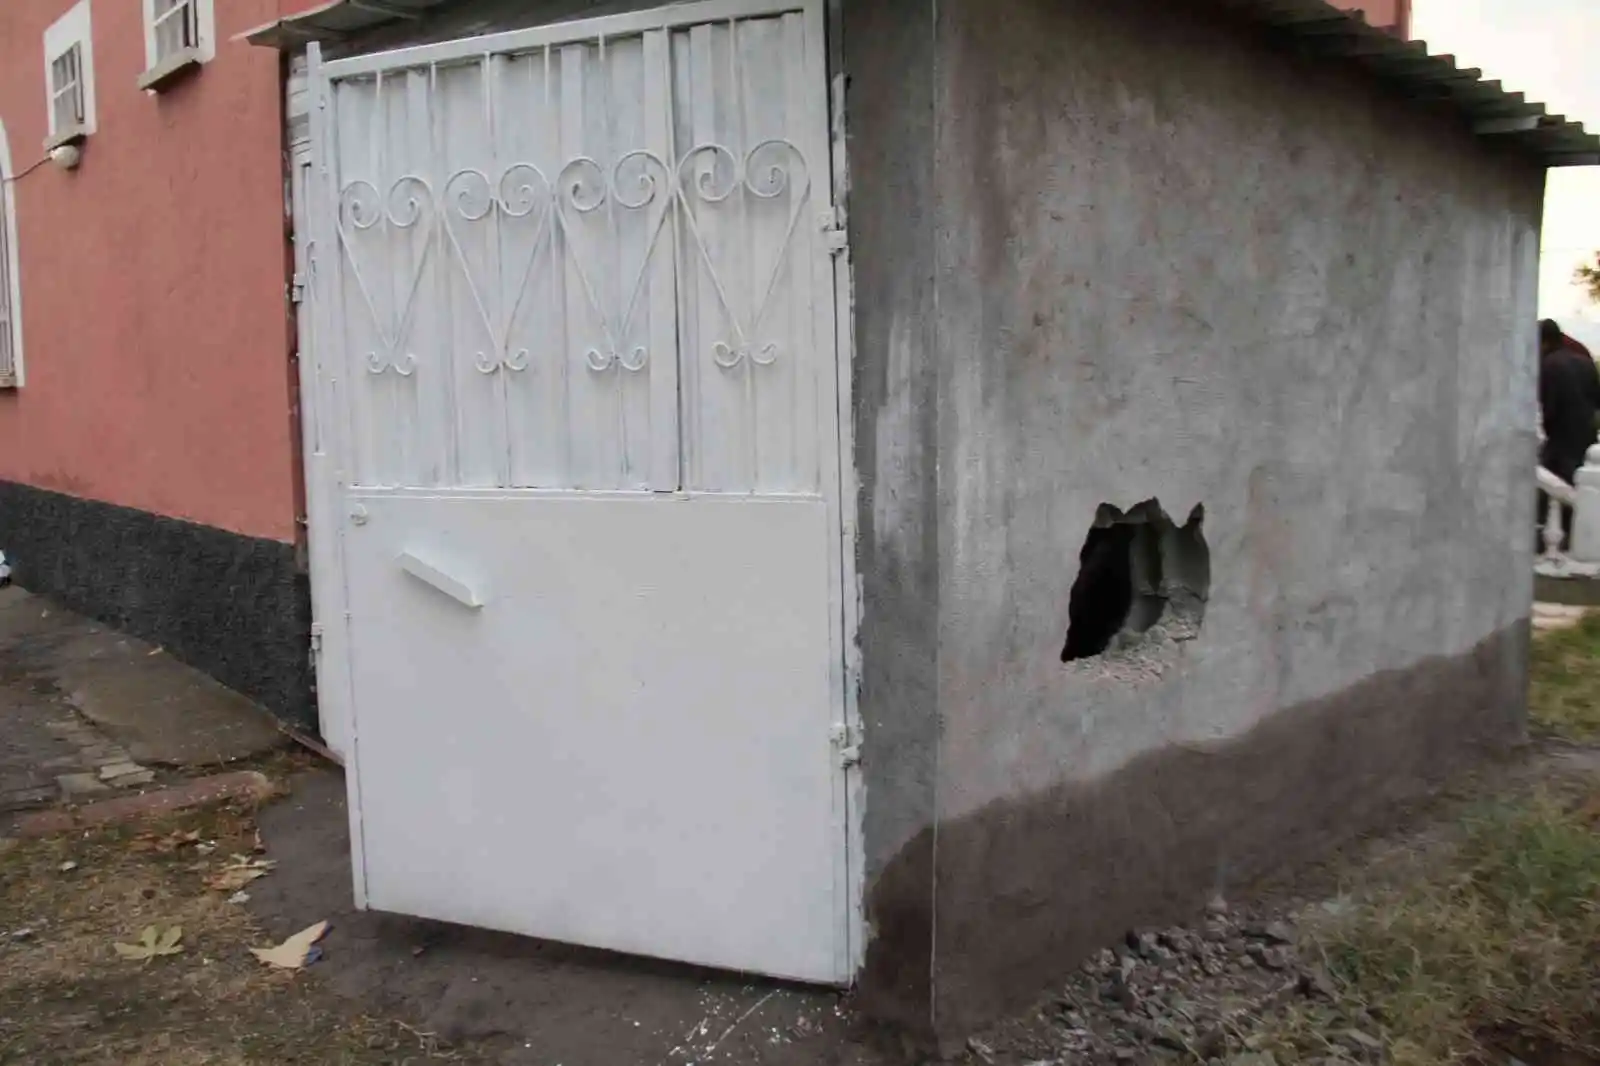 Bu kadarına da pes dedirten hırsızlık: Kamyonla köye gelen hırsızlar 15 evi talan etti
